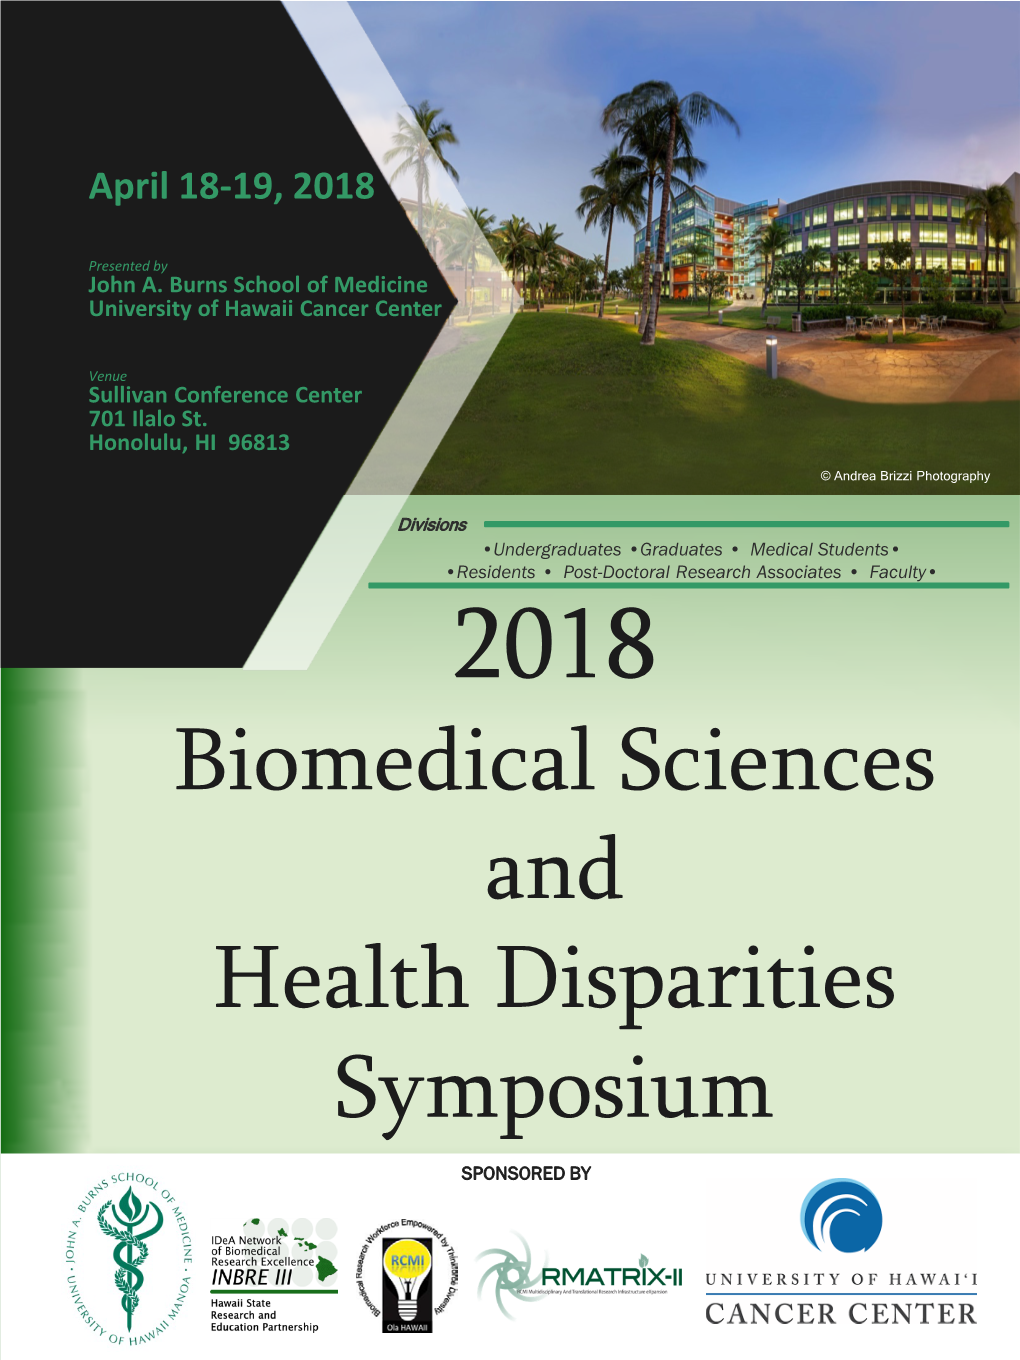 2018 Biomedical Sciences and Health Disparities Program